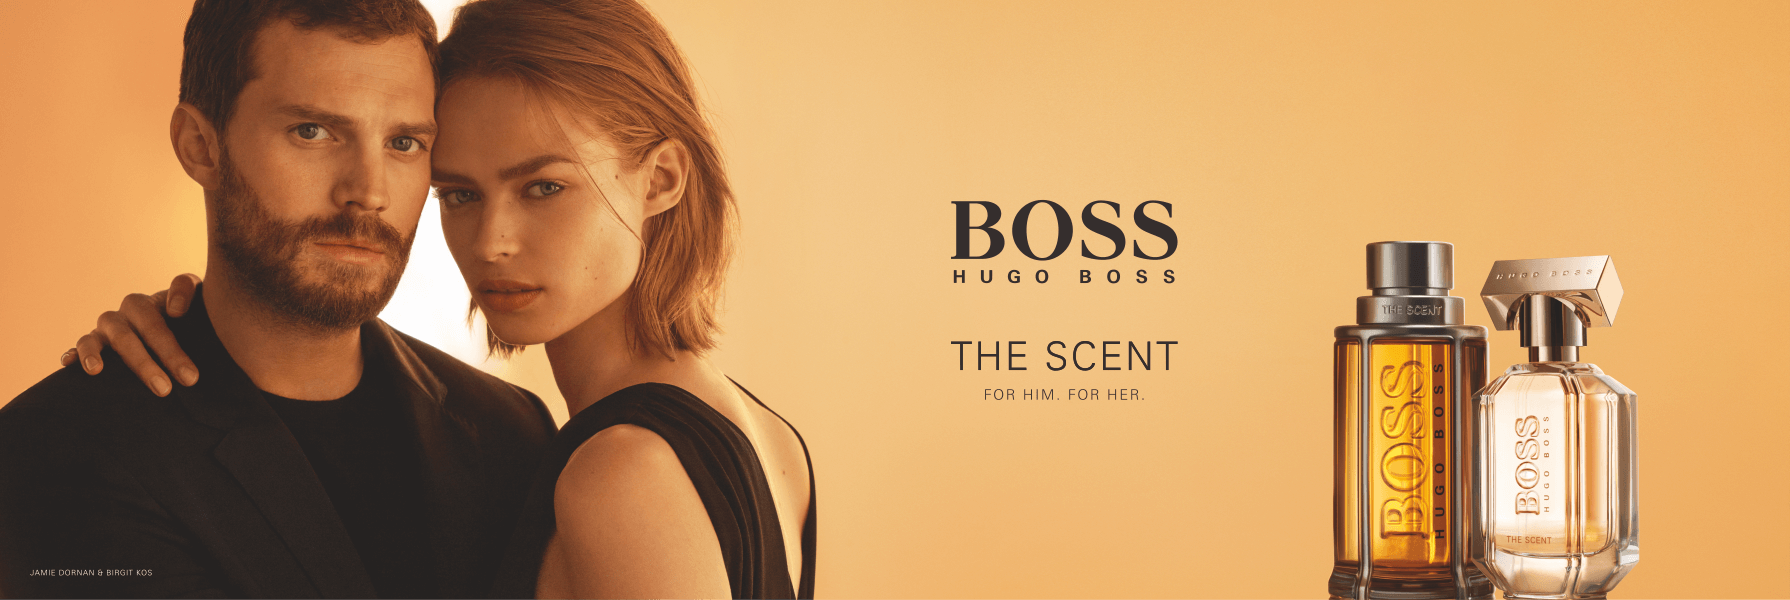 ILU_Boss_TheScent_duo_blogi bänner